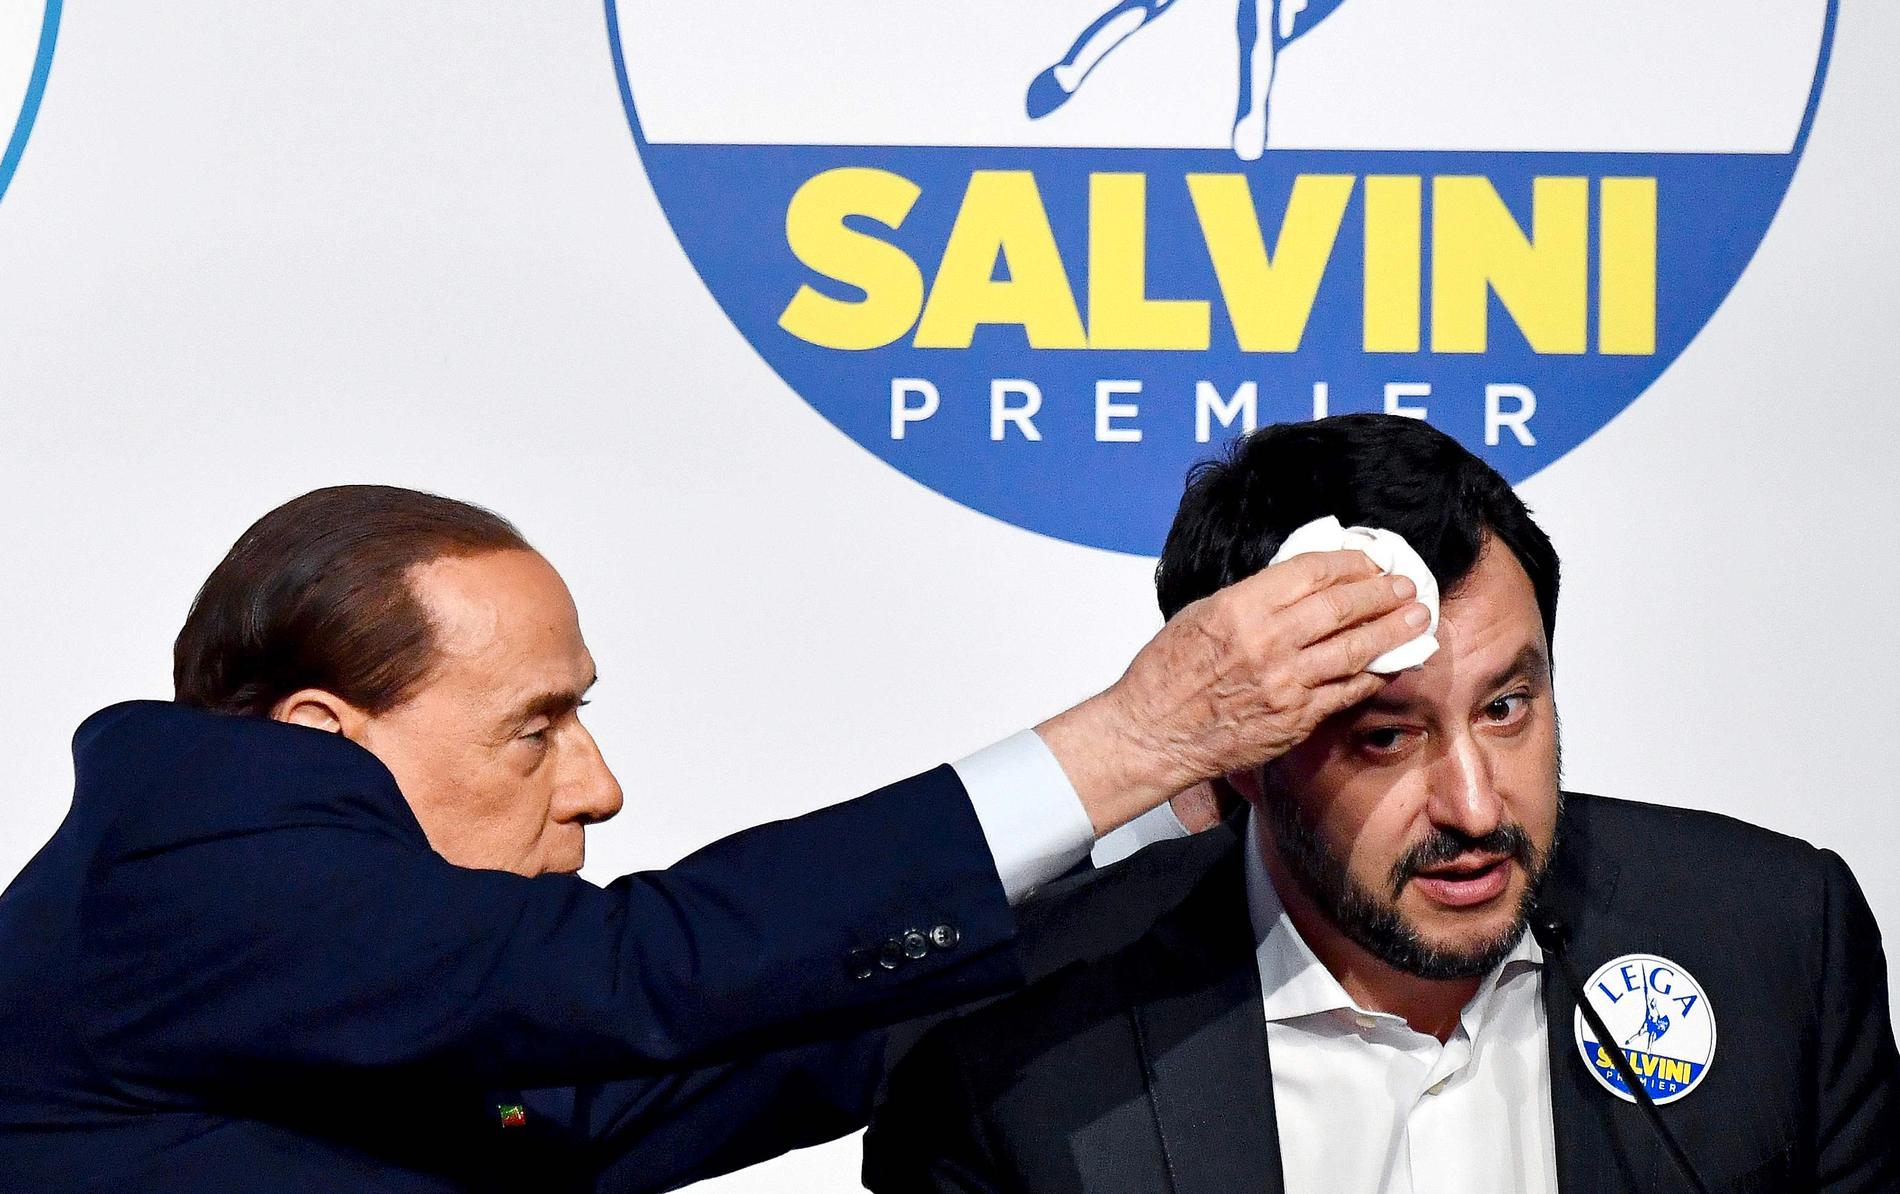 Högerextrema Legas partiledare Salvini får pannan baddad av f.d. premiärminister Berlusconi. Legas försök att bilda regering med populistiska femstjärnerörelsen misslyckades igår.